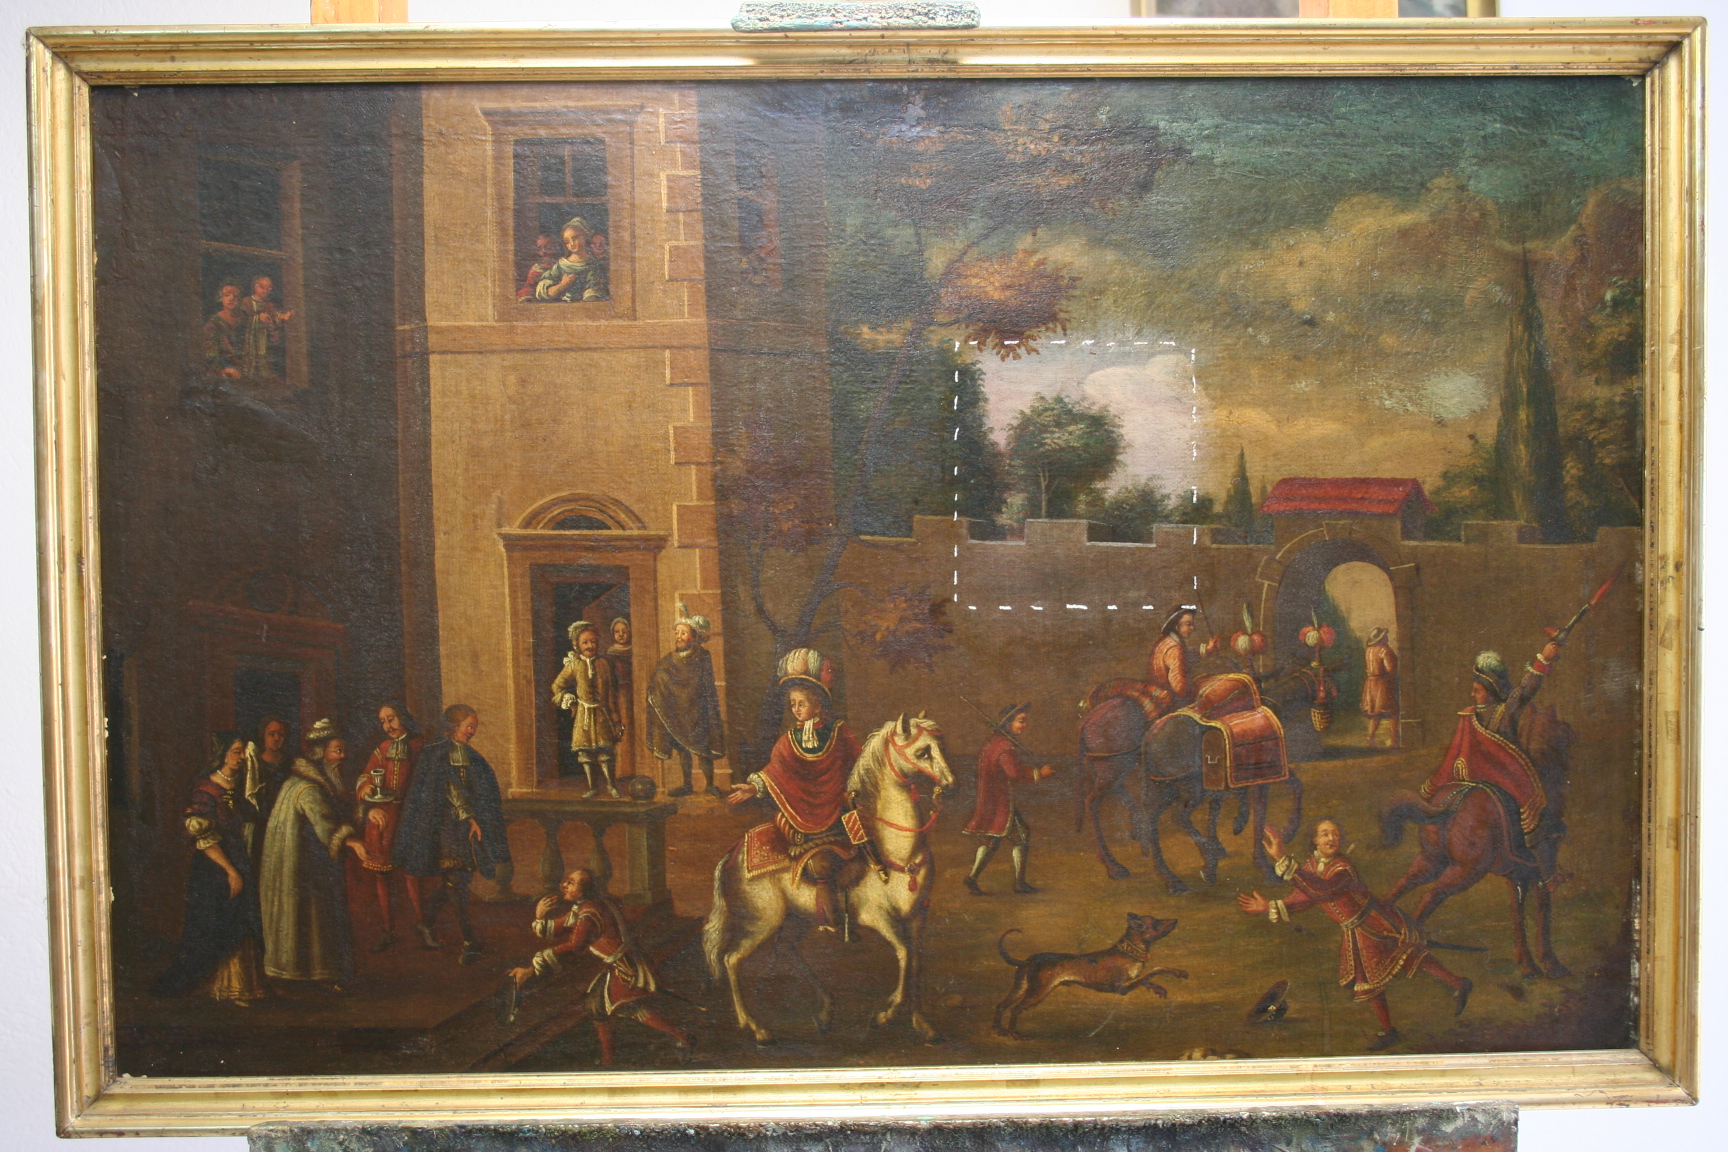 Probe Reinigung, Malerei des 16. Jahrhunderts